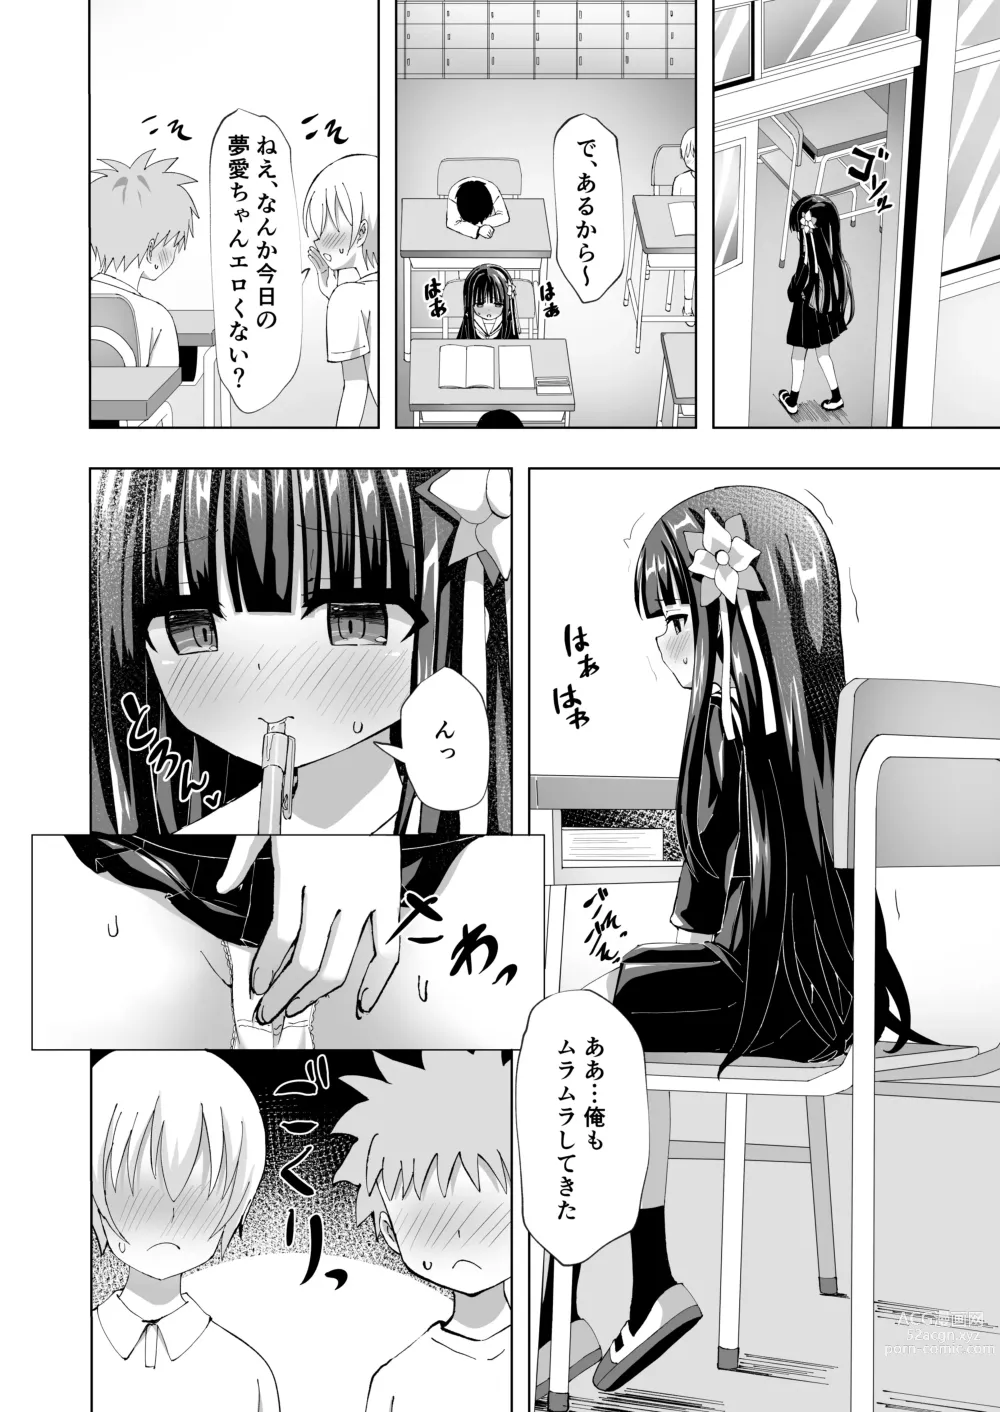 Page 12 of doujinshi Yua Nightmare